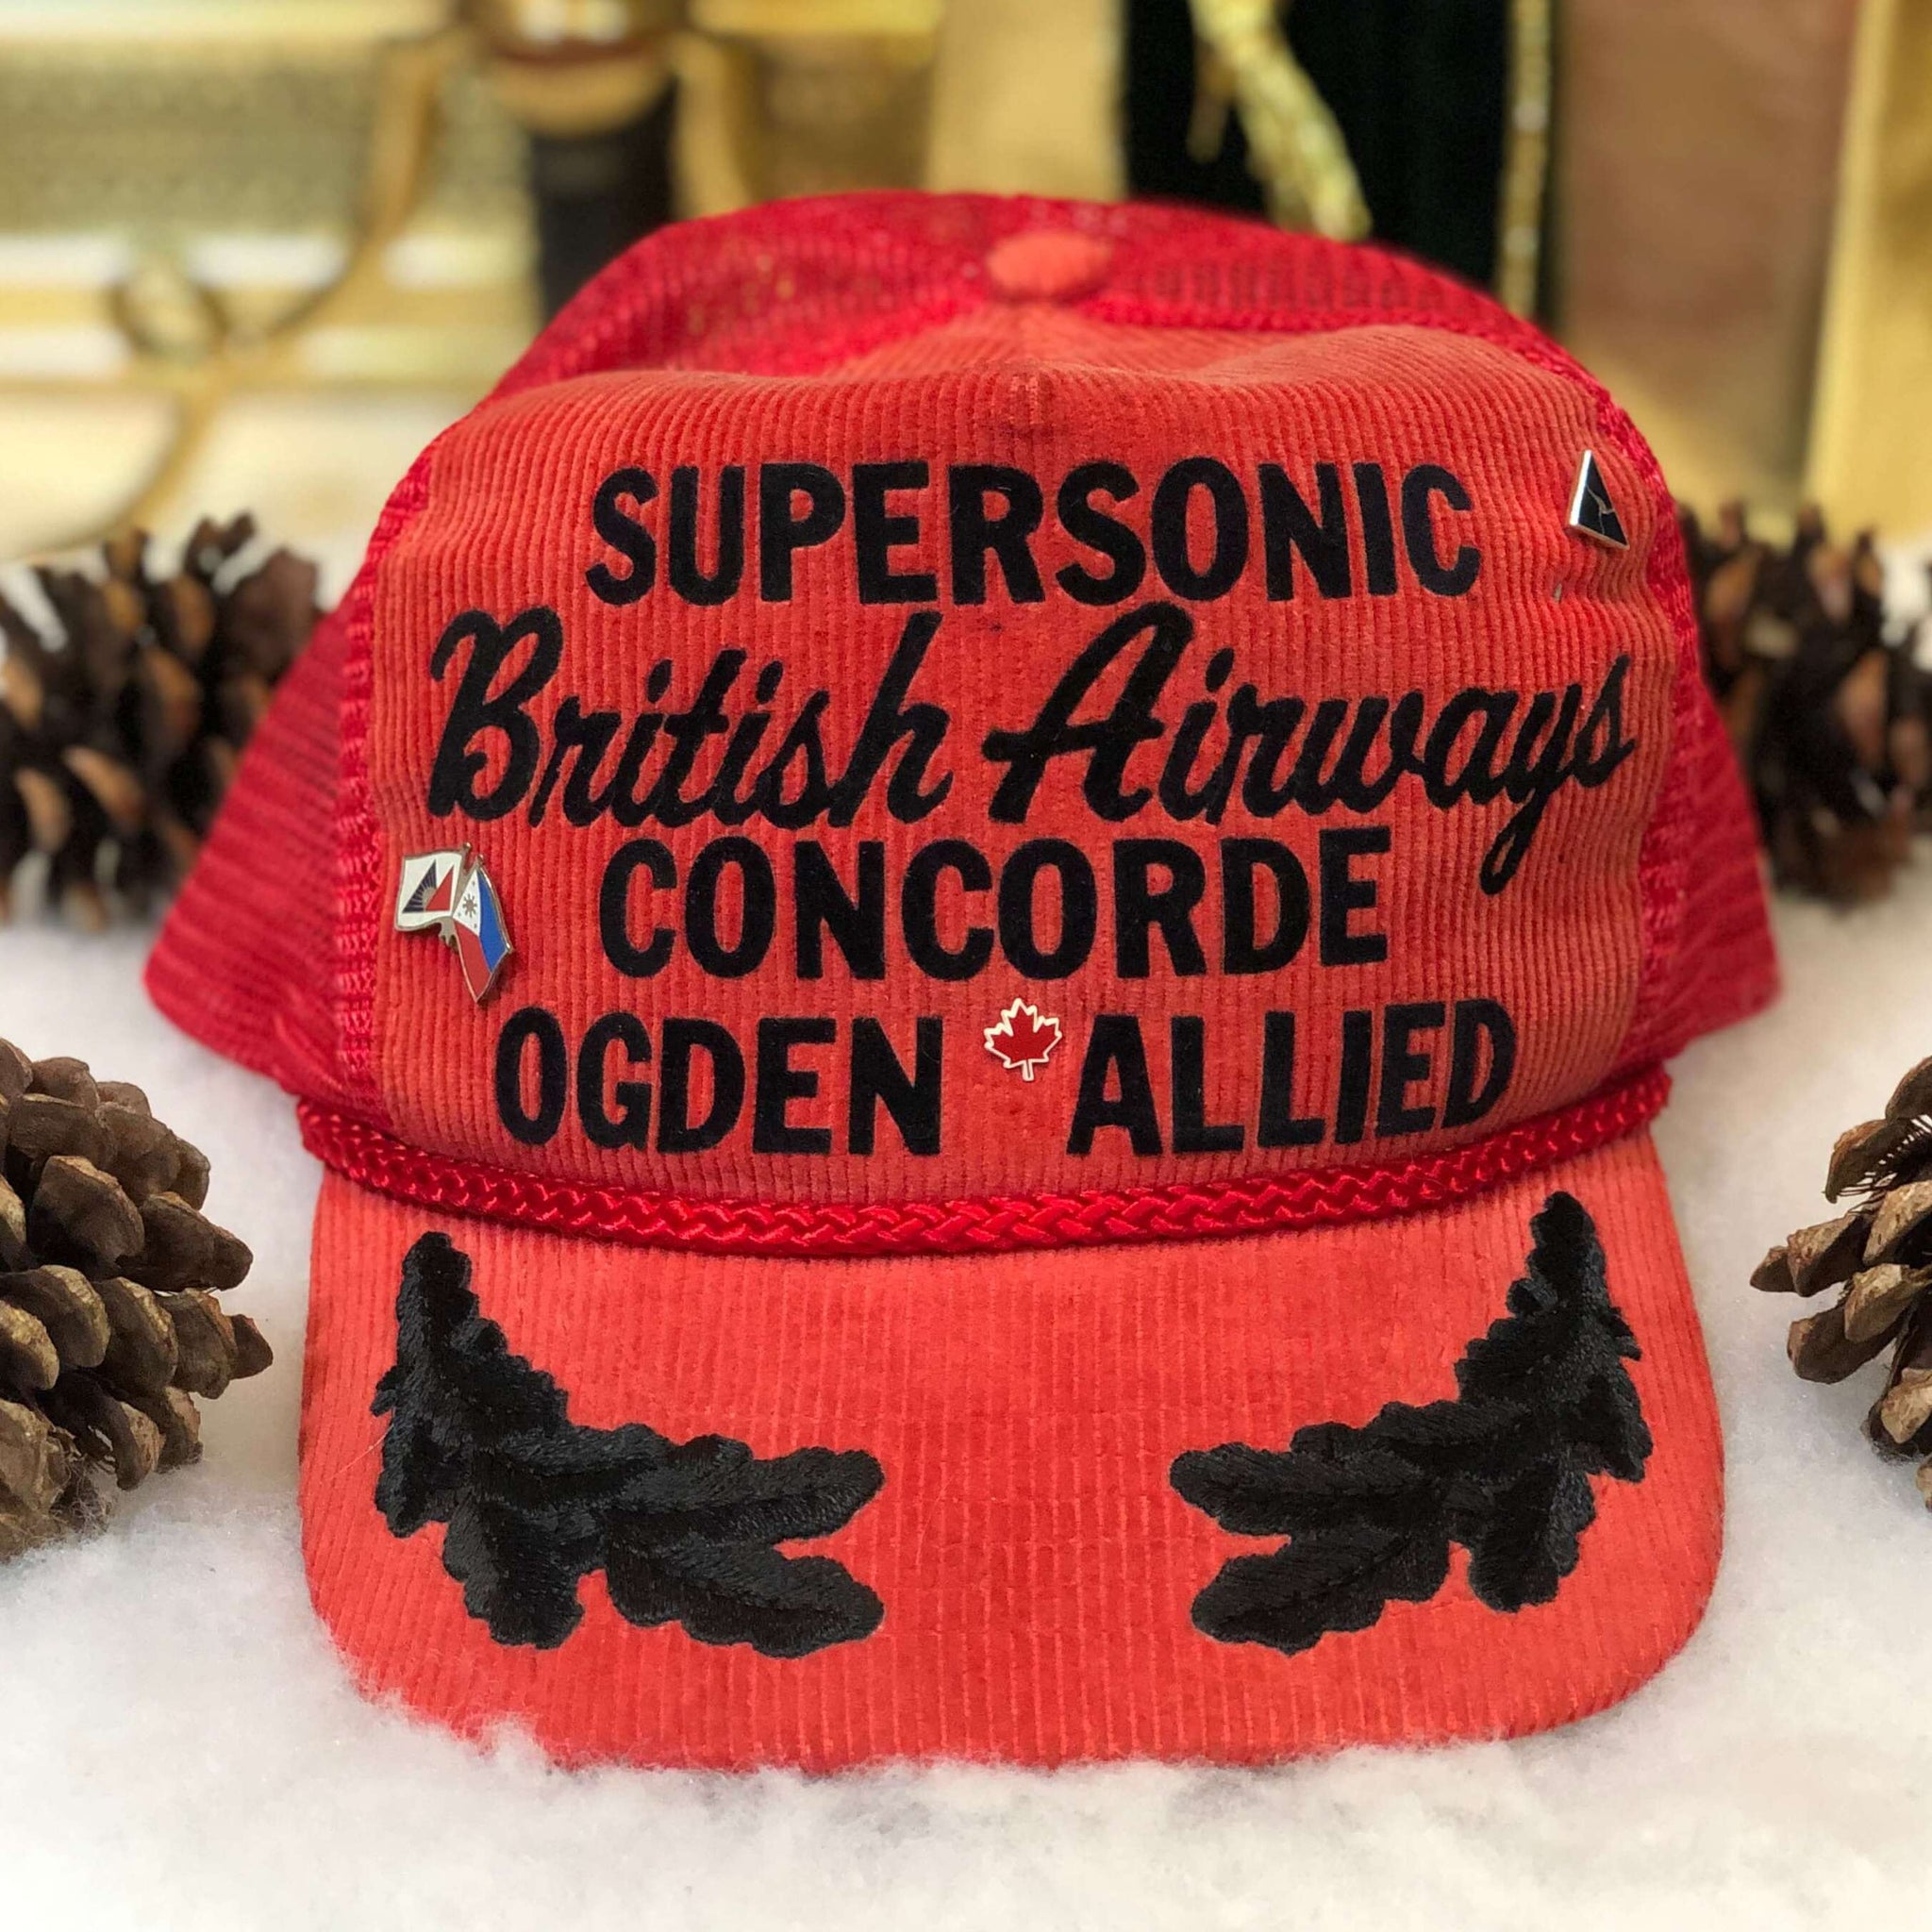 Vintage Supersonic British Airways Concorde Ogden Allied Corduroy Trucker Hat